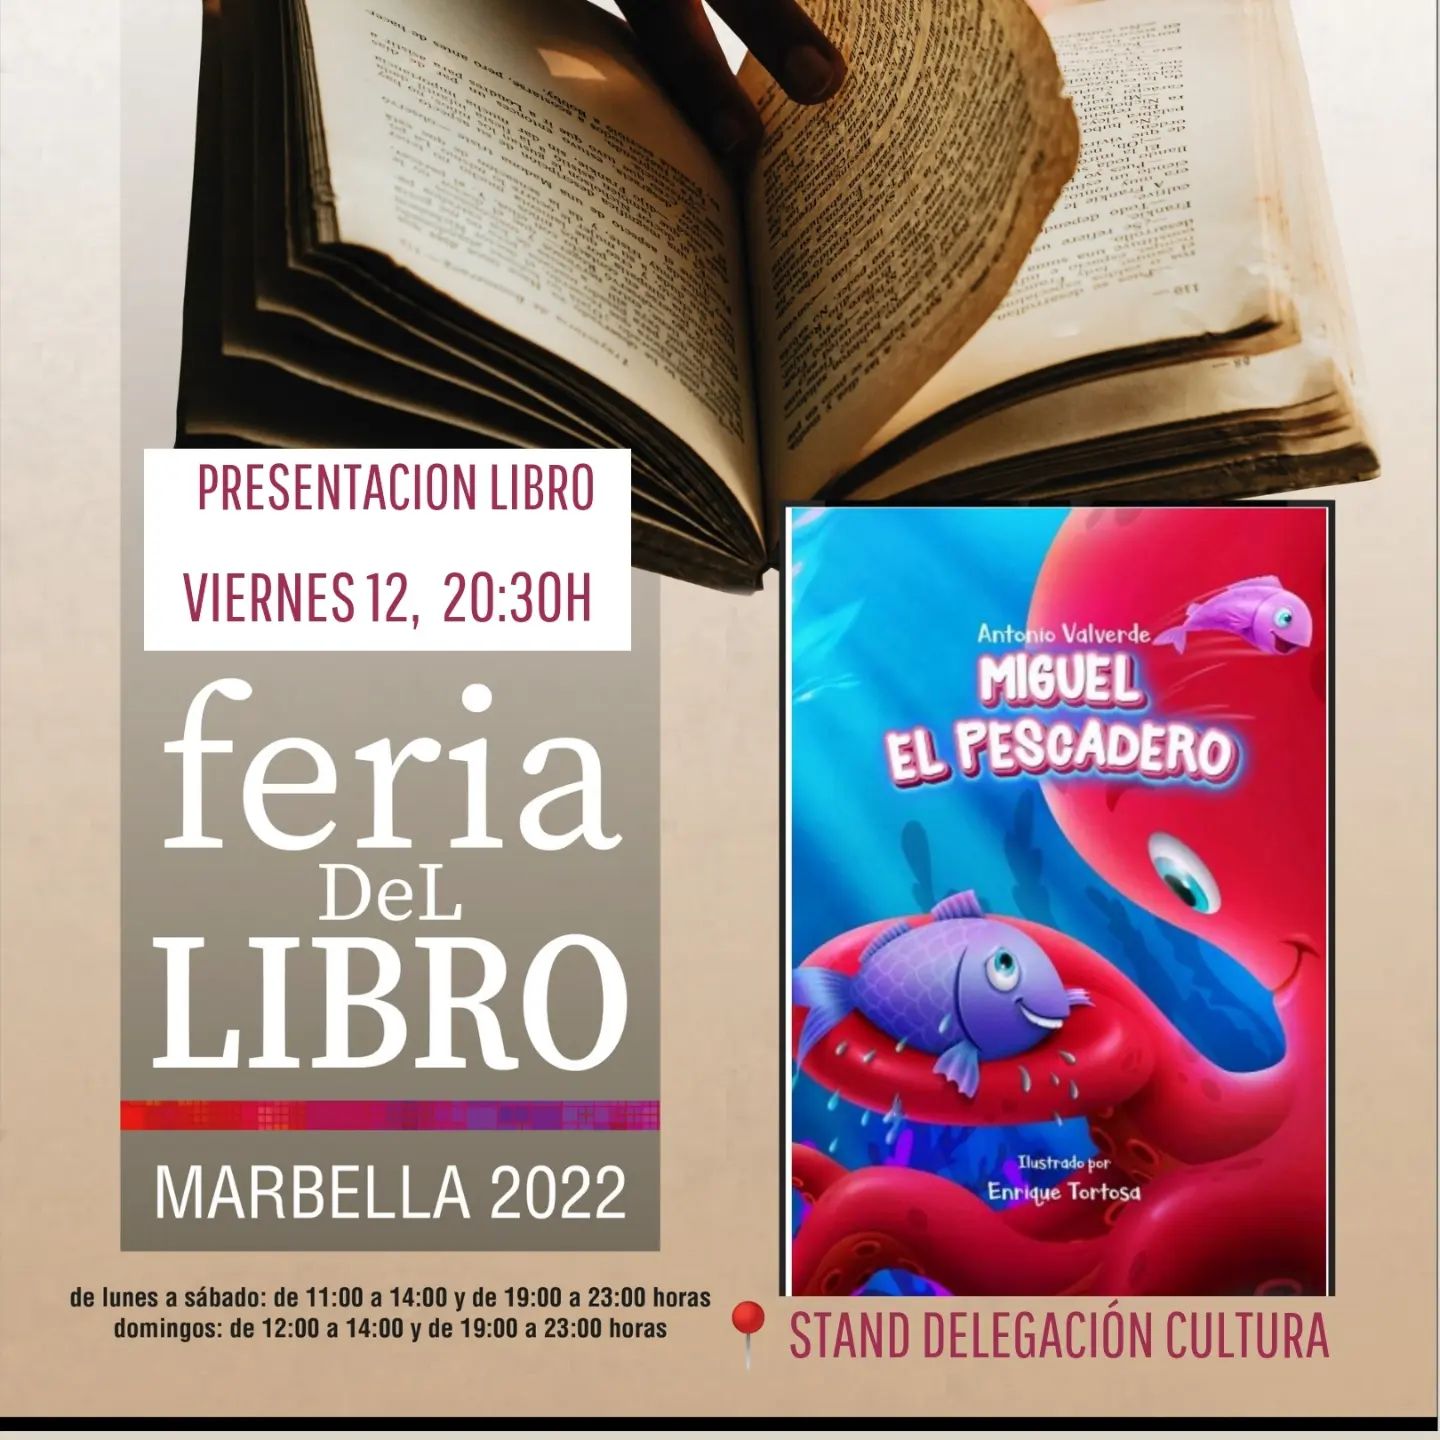 La Feria del Libro de Marbella encara la última semana con presentaciones de libros y talleres infantiles